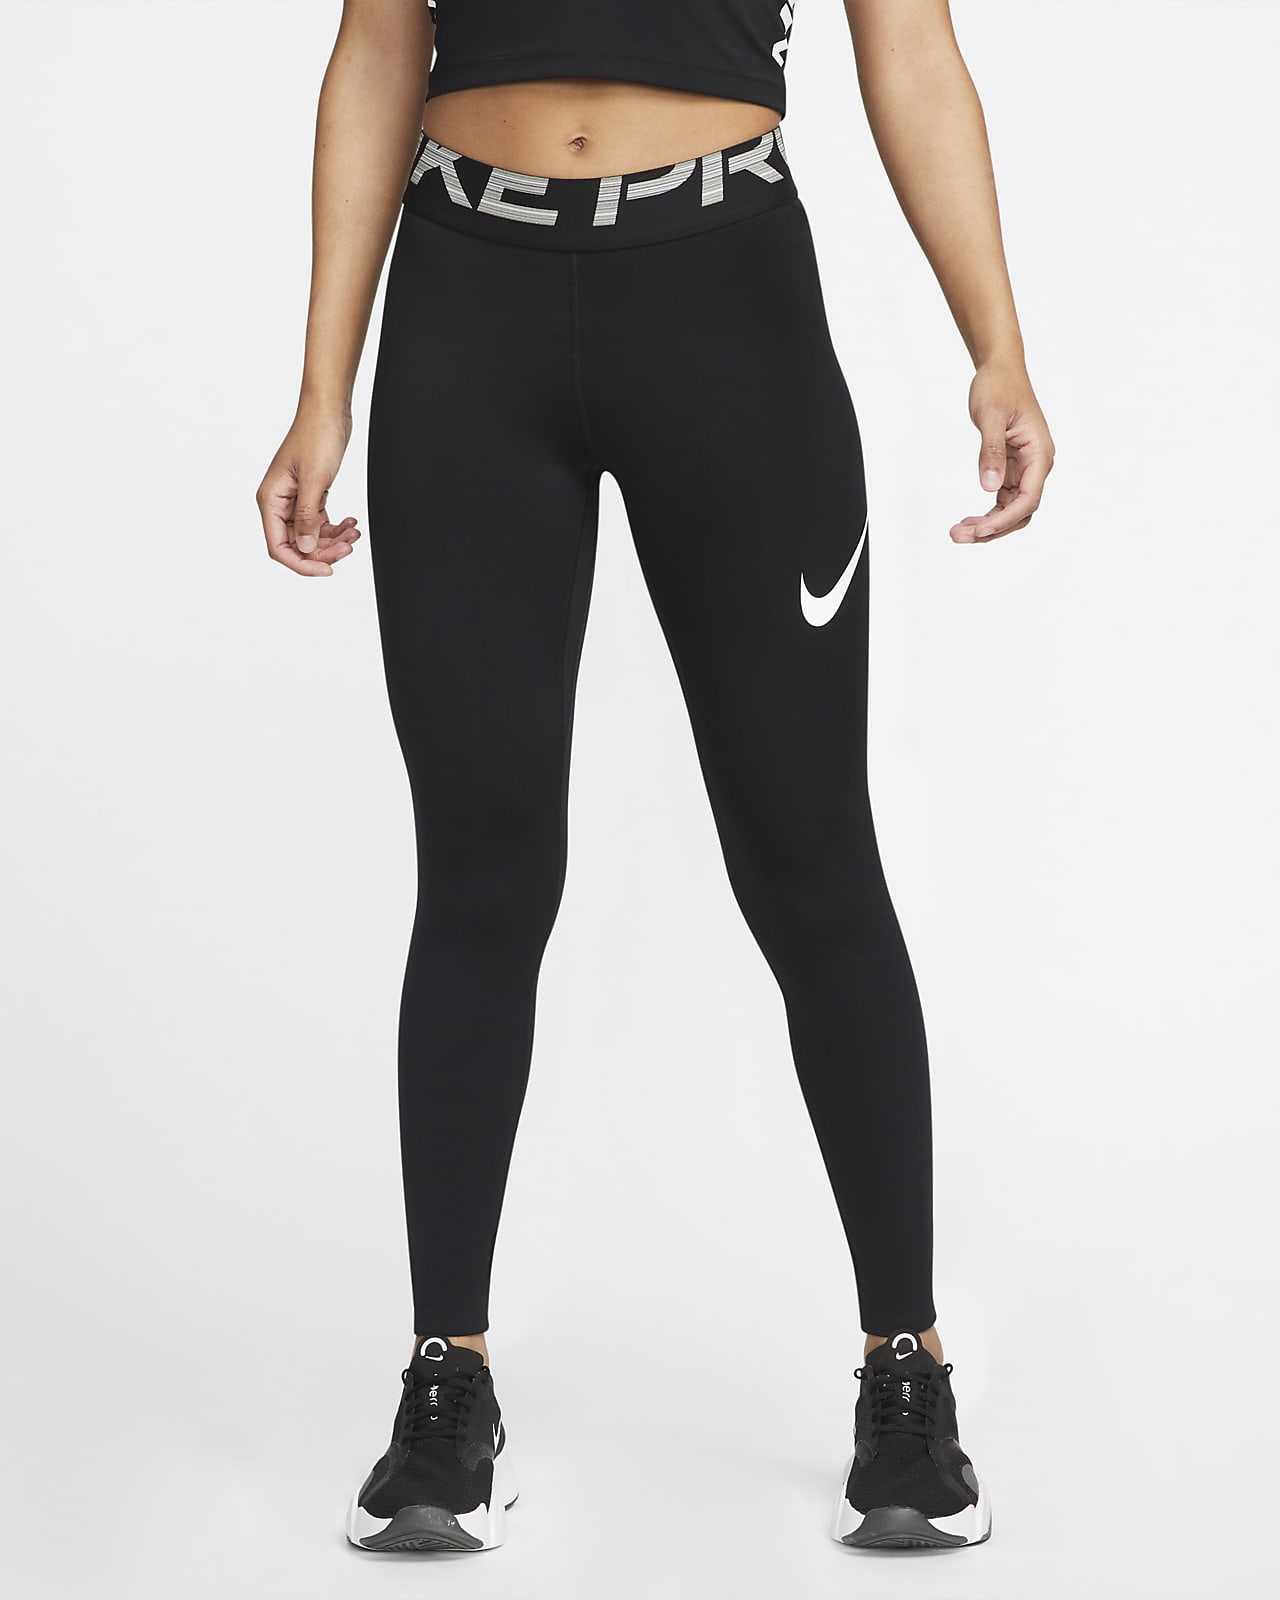 Dámské tréninkové legíny Nike Pro Dri-FIT se středně vysokým pasem a síťovanými díly